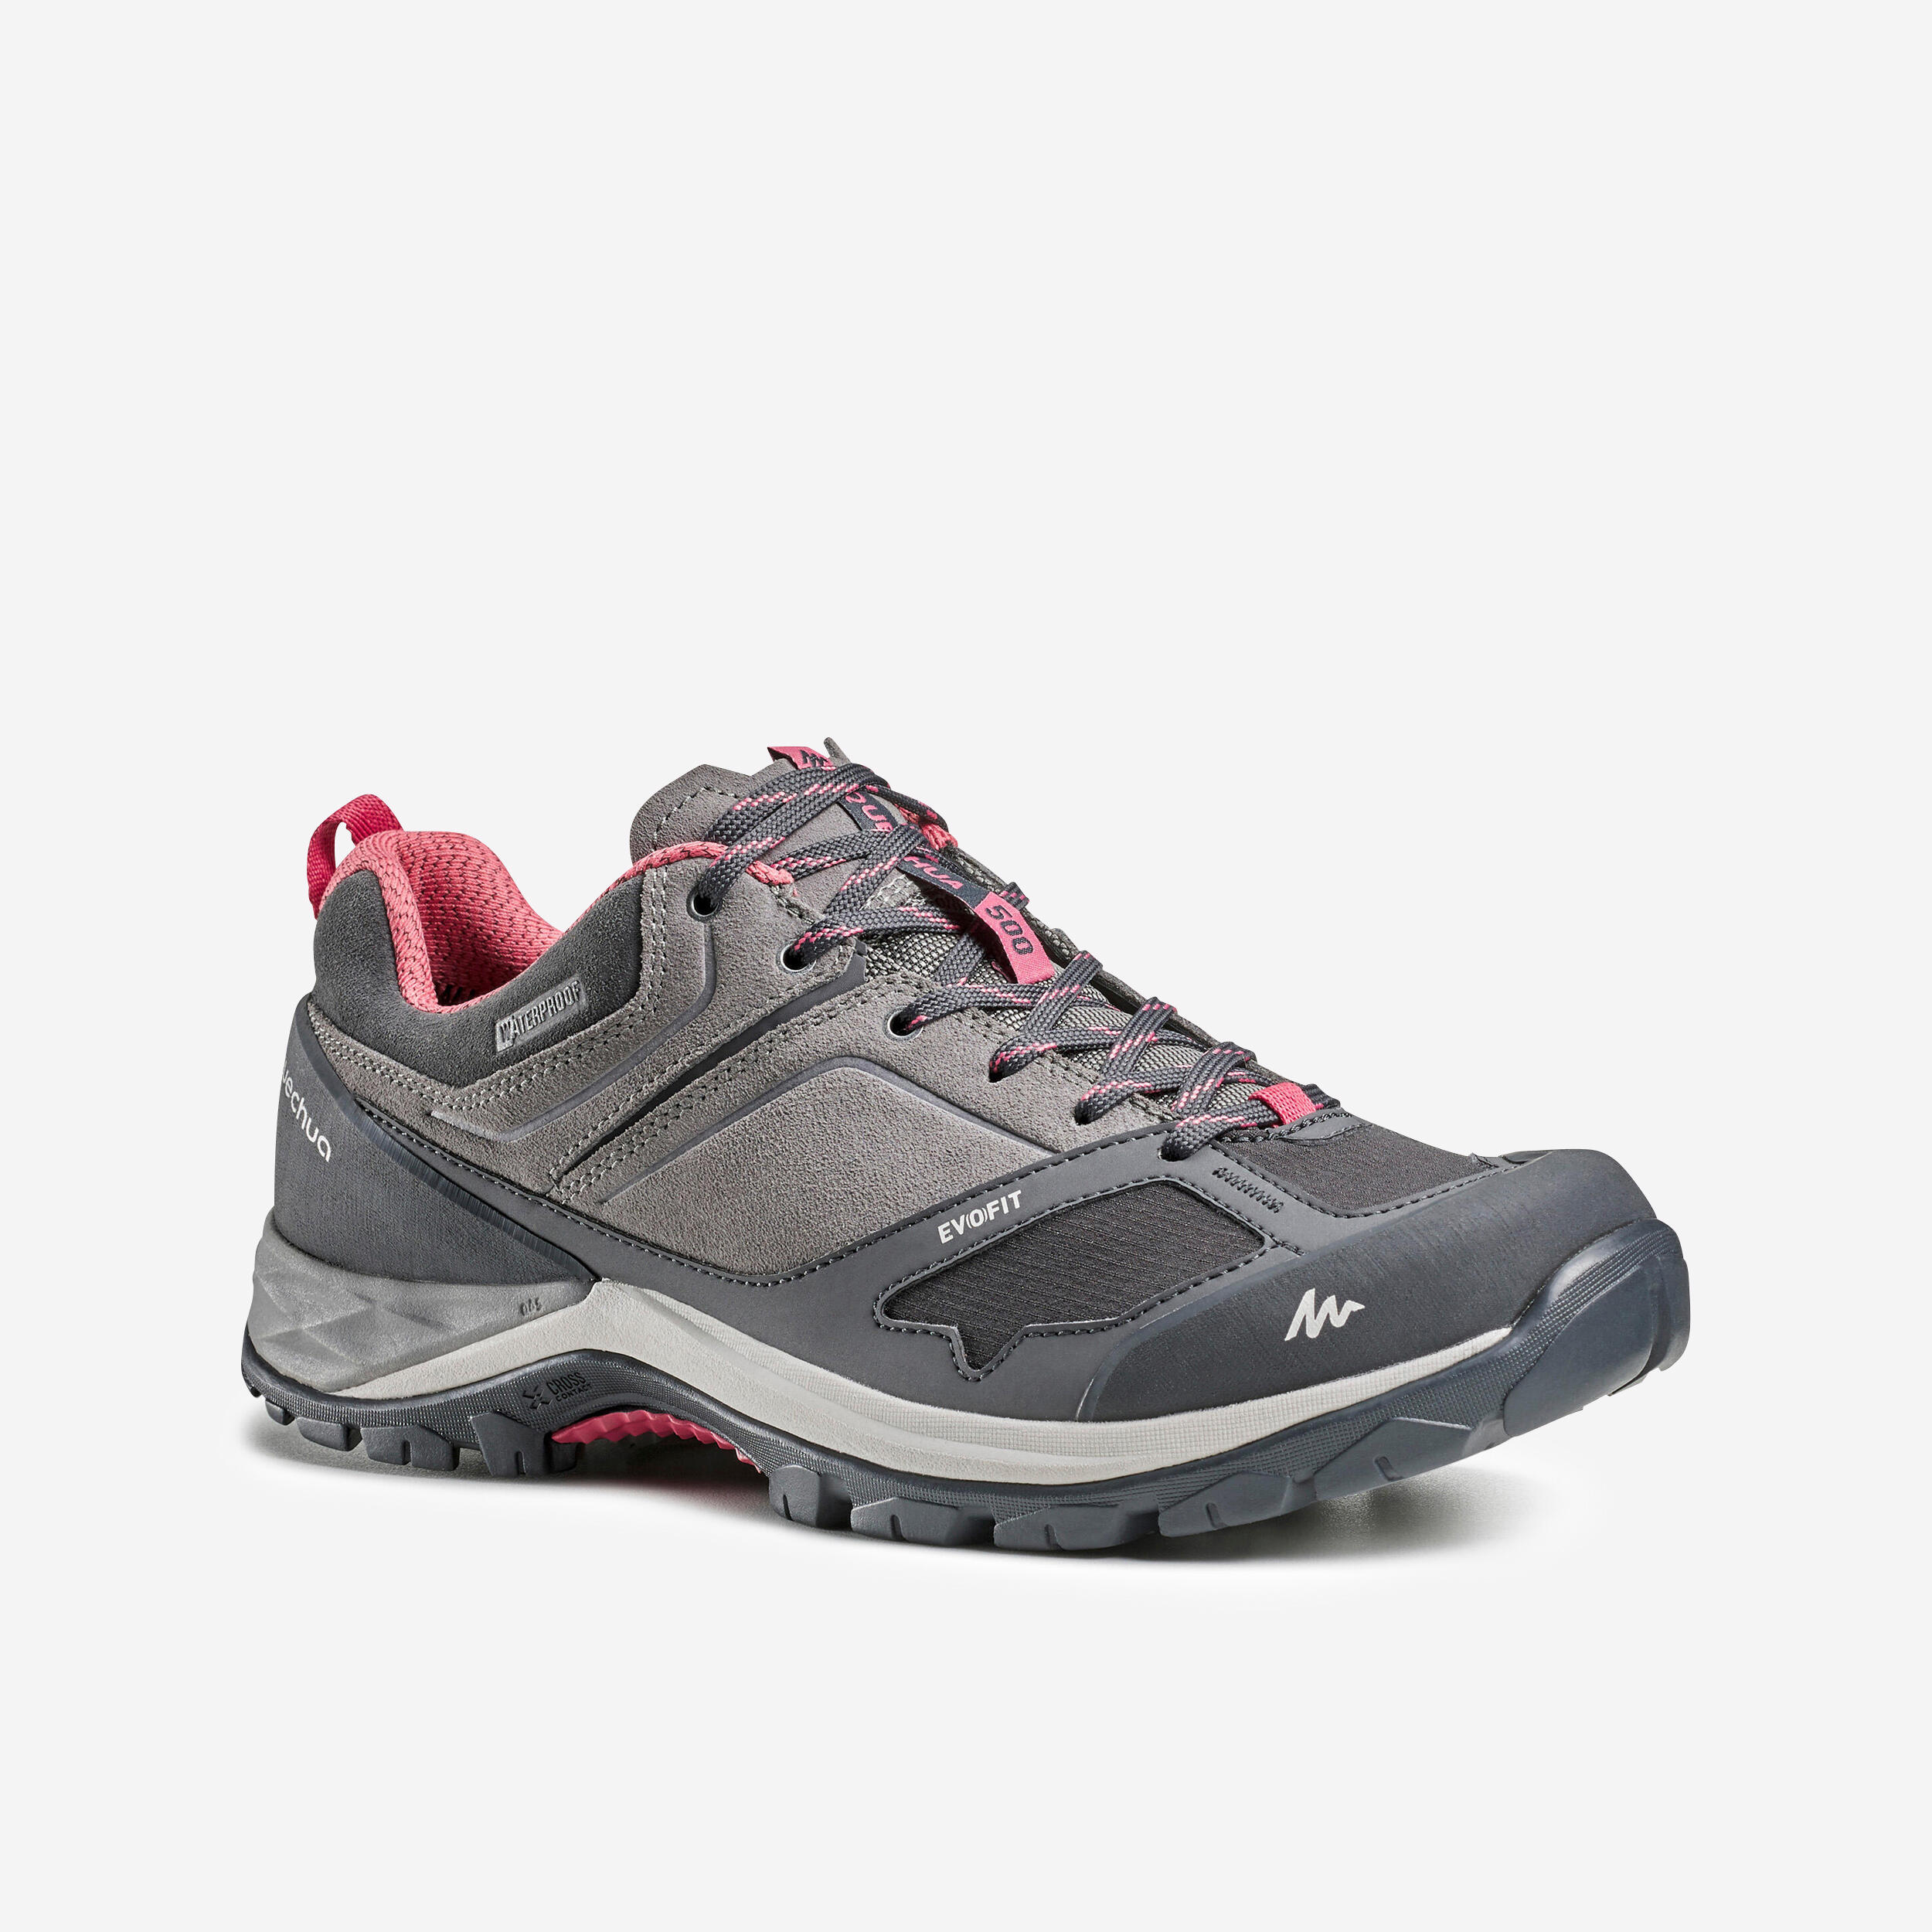 QUECHUA Women's Mountain Walking Waterproof Shoes - MH500 - pink/grey